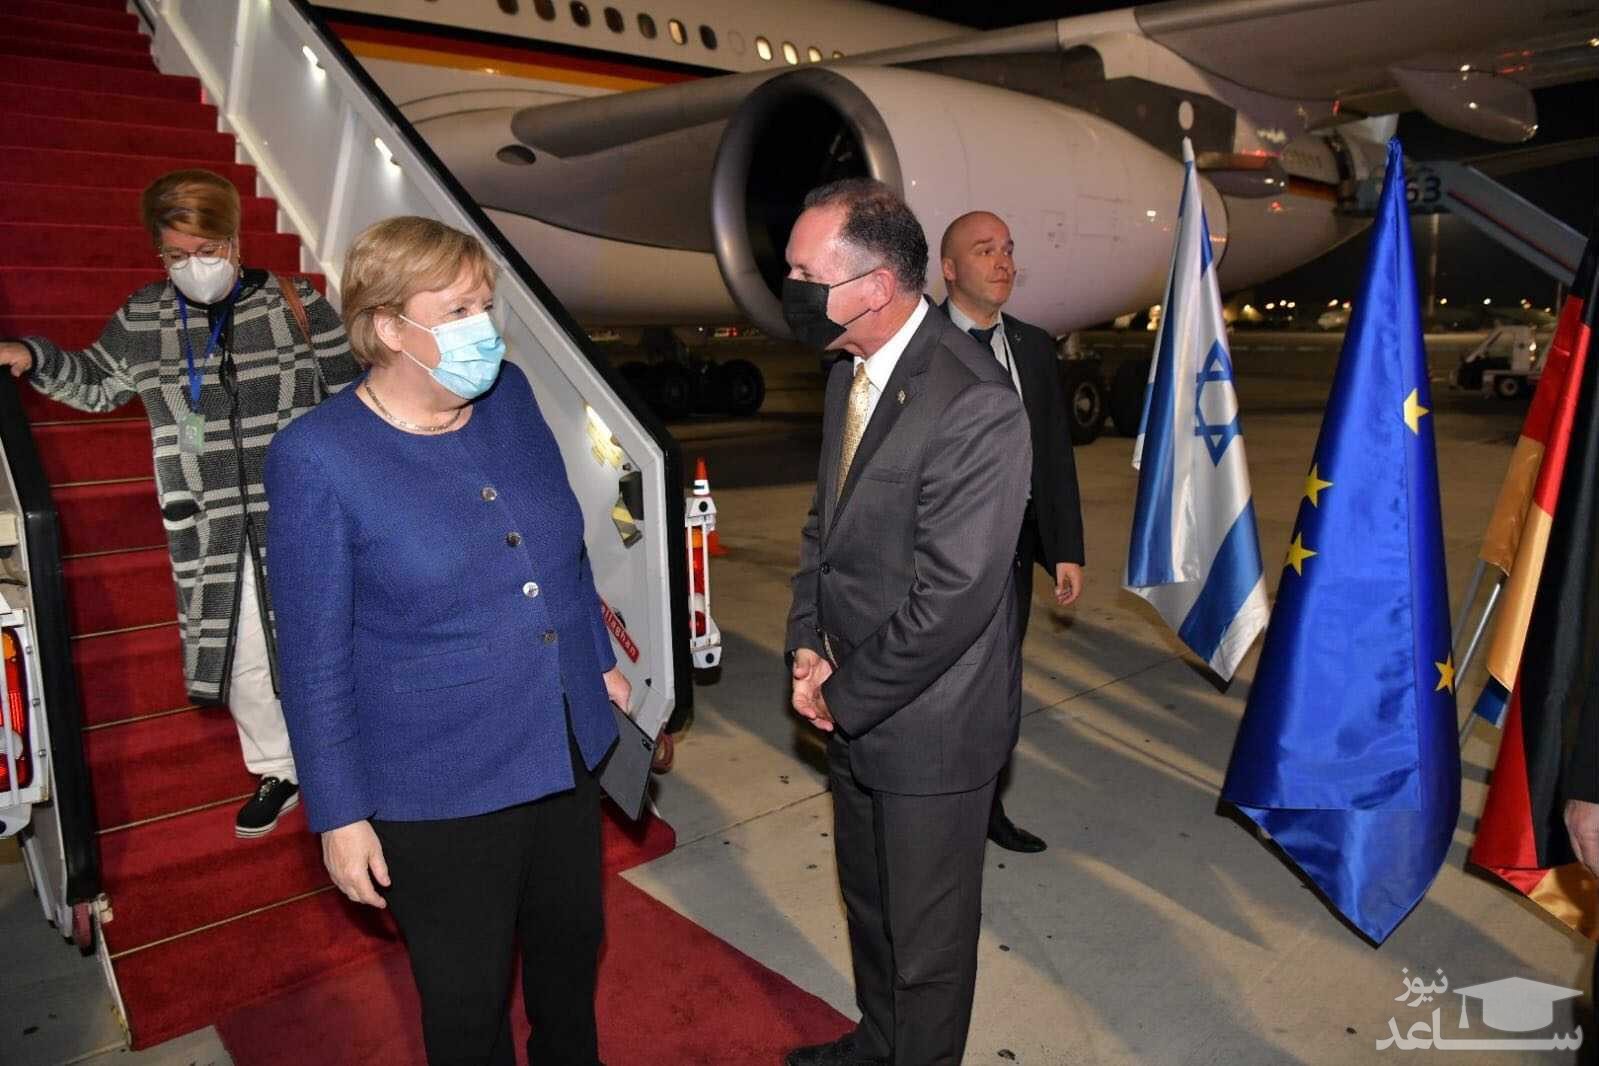 سفر صدراعظم آلمان به اسراییل در واپسین روزهای صدارت اعظمی/ تایمز اسراییل